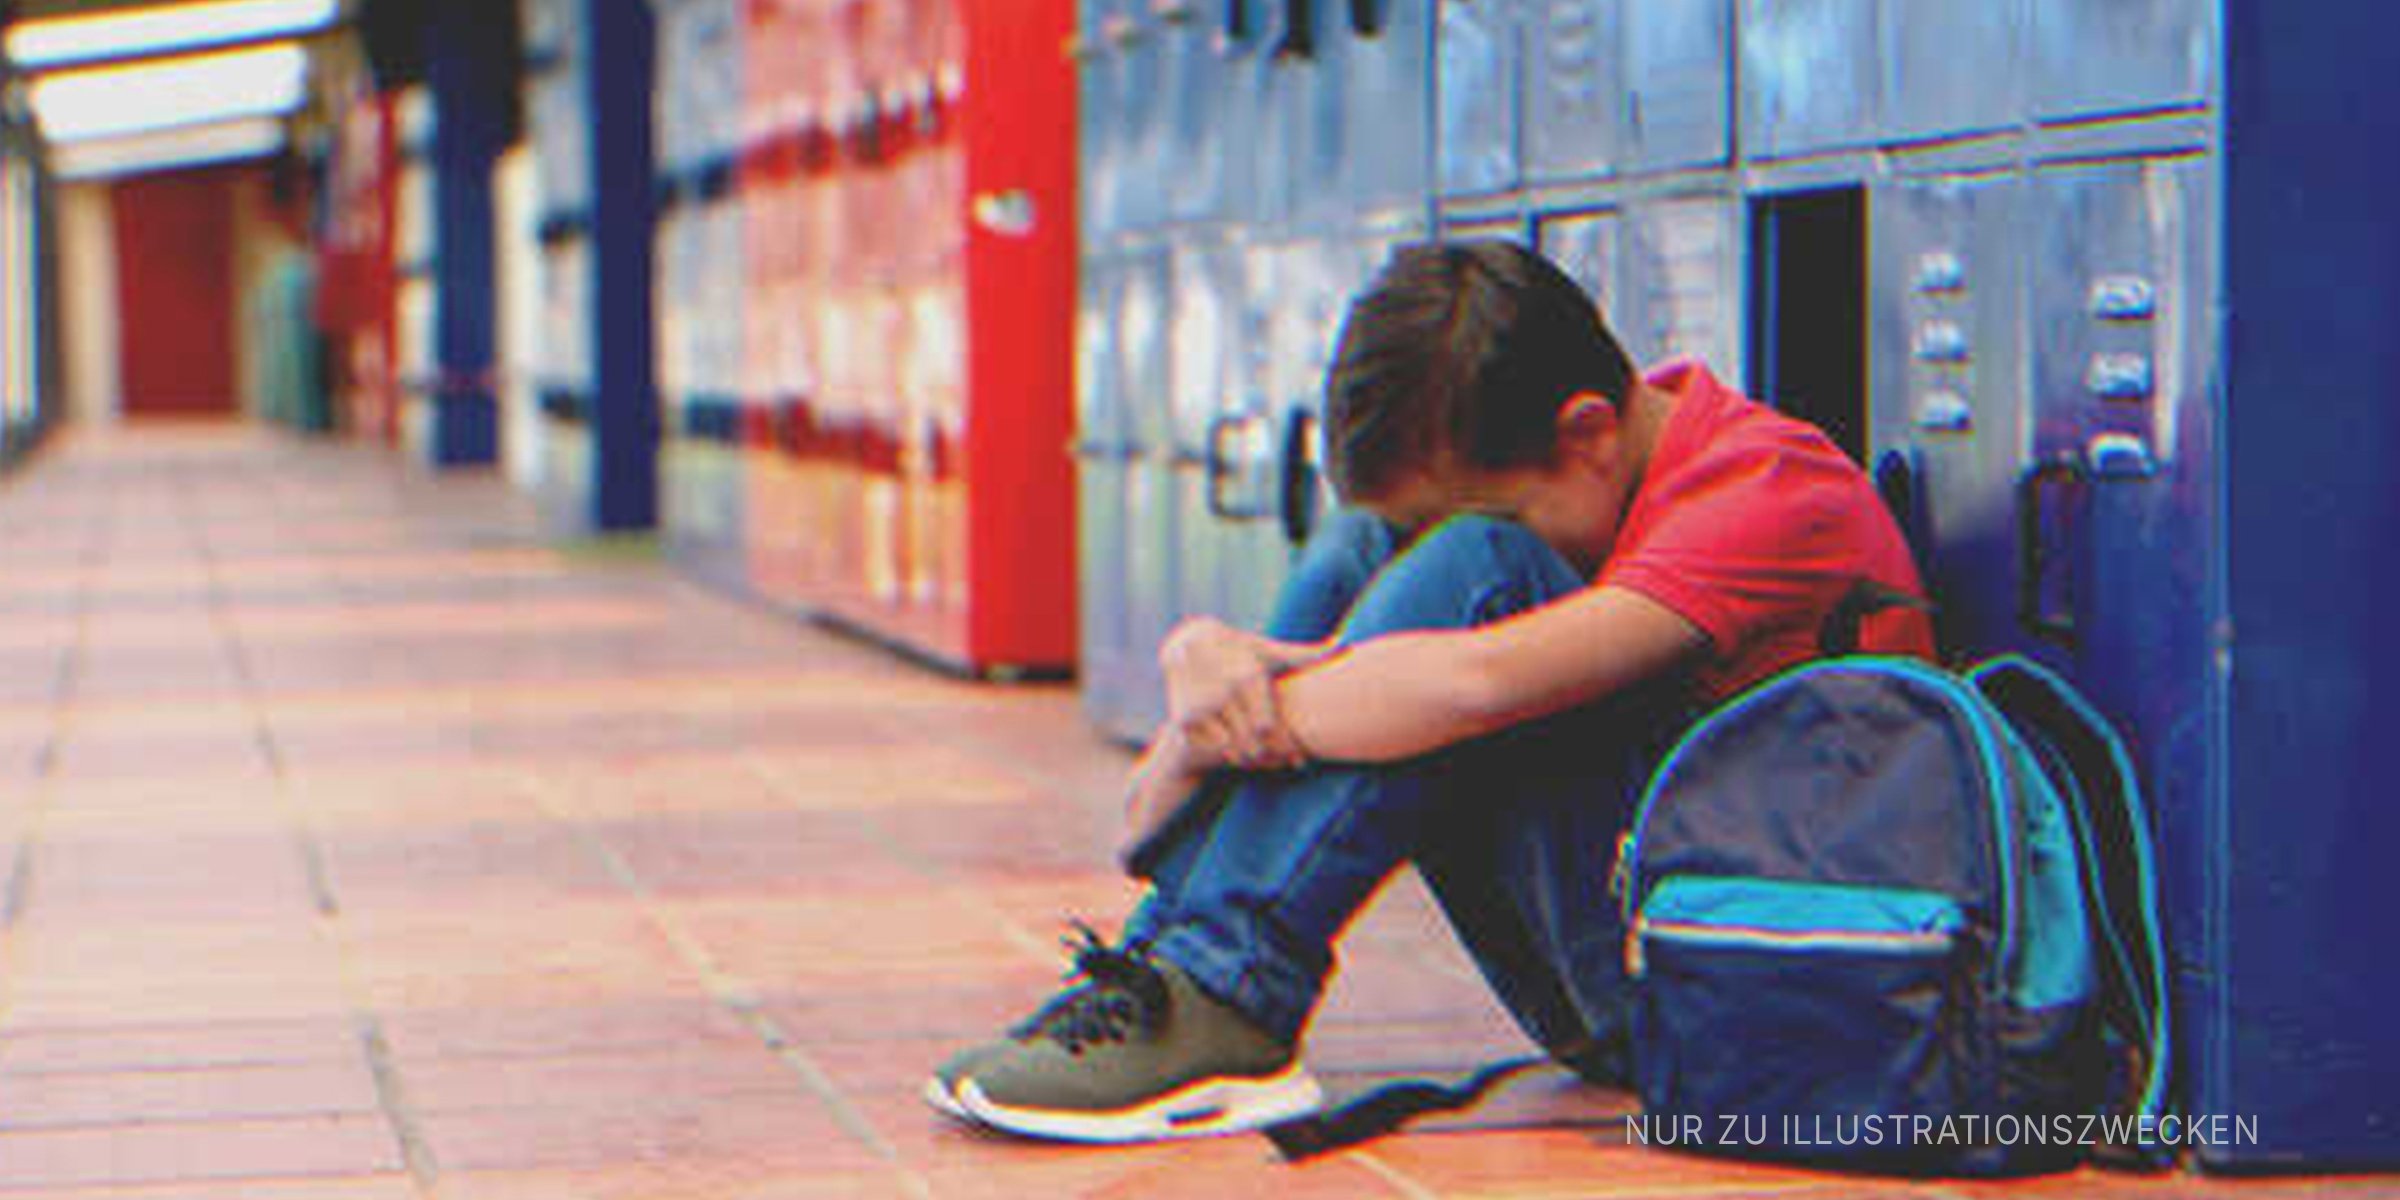 Reicher Junge verspottet armen Mitschüler. | Quelle: Getty Images